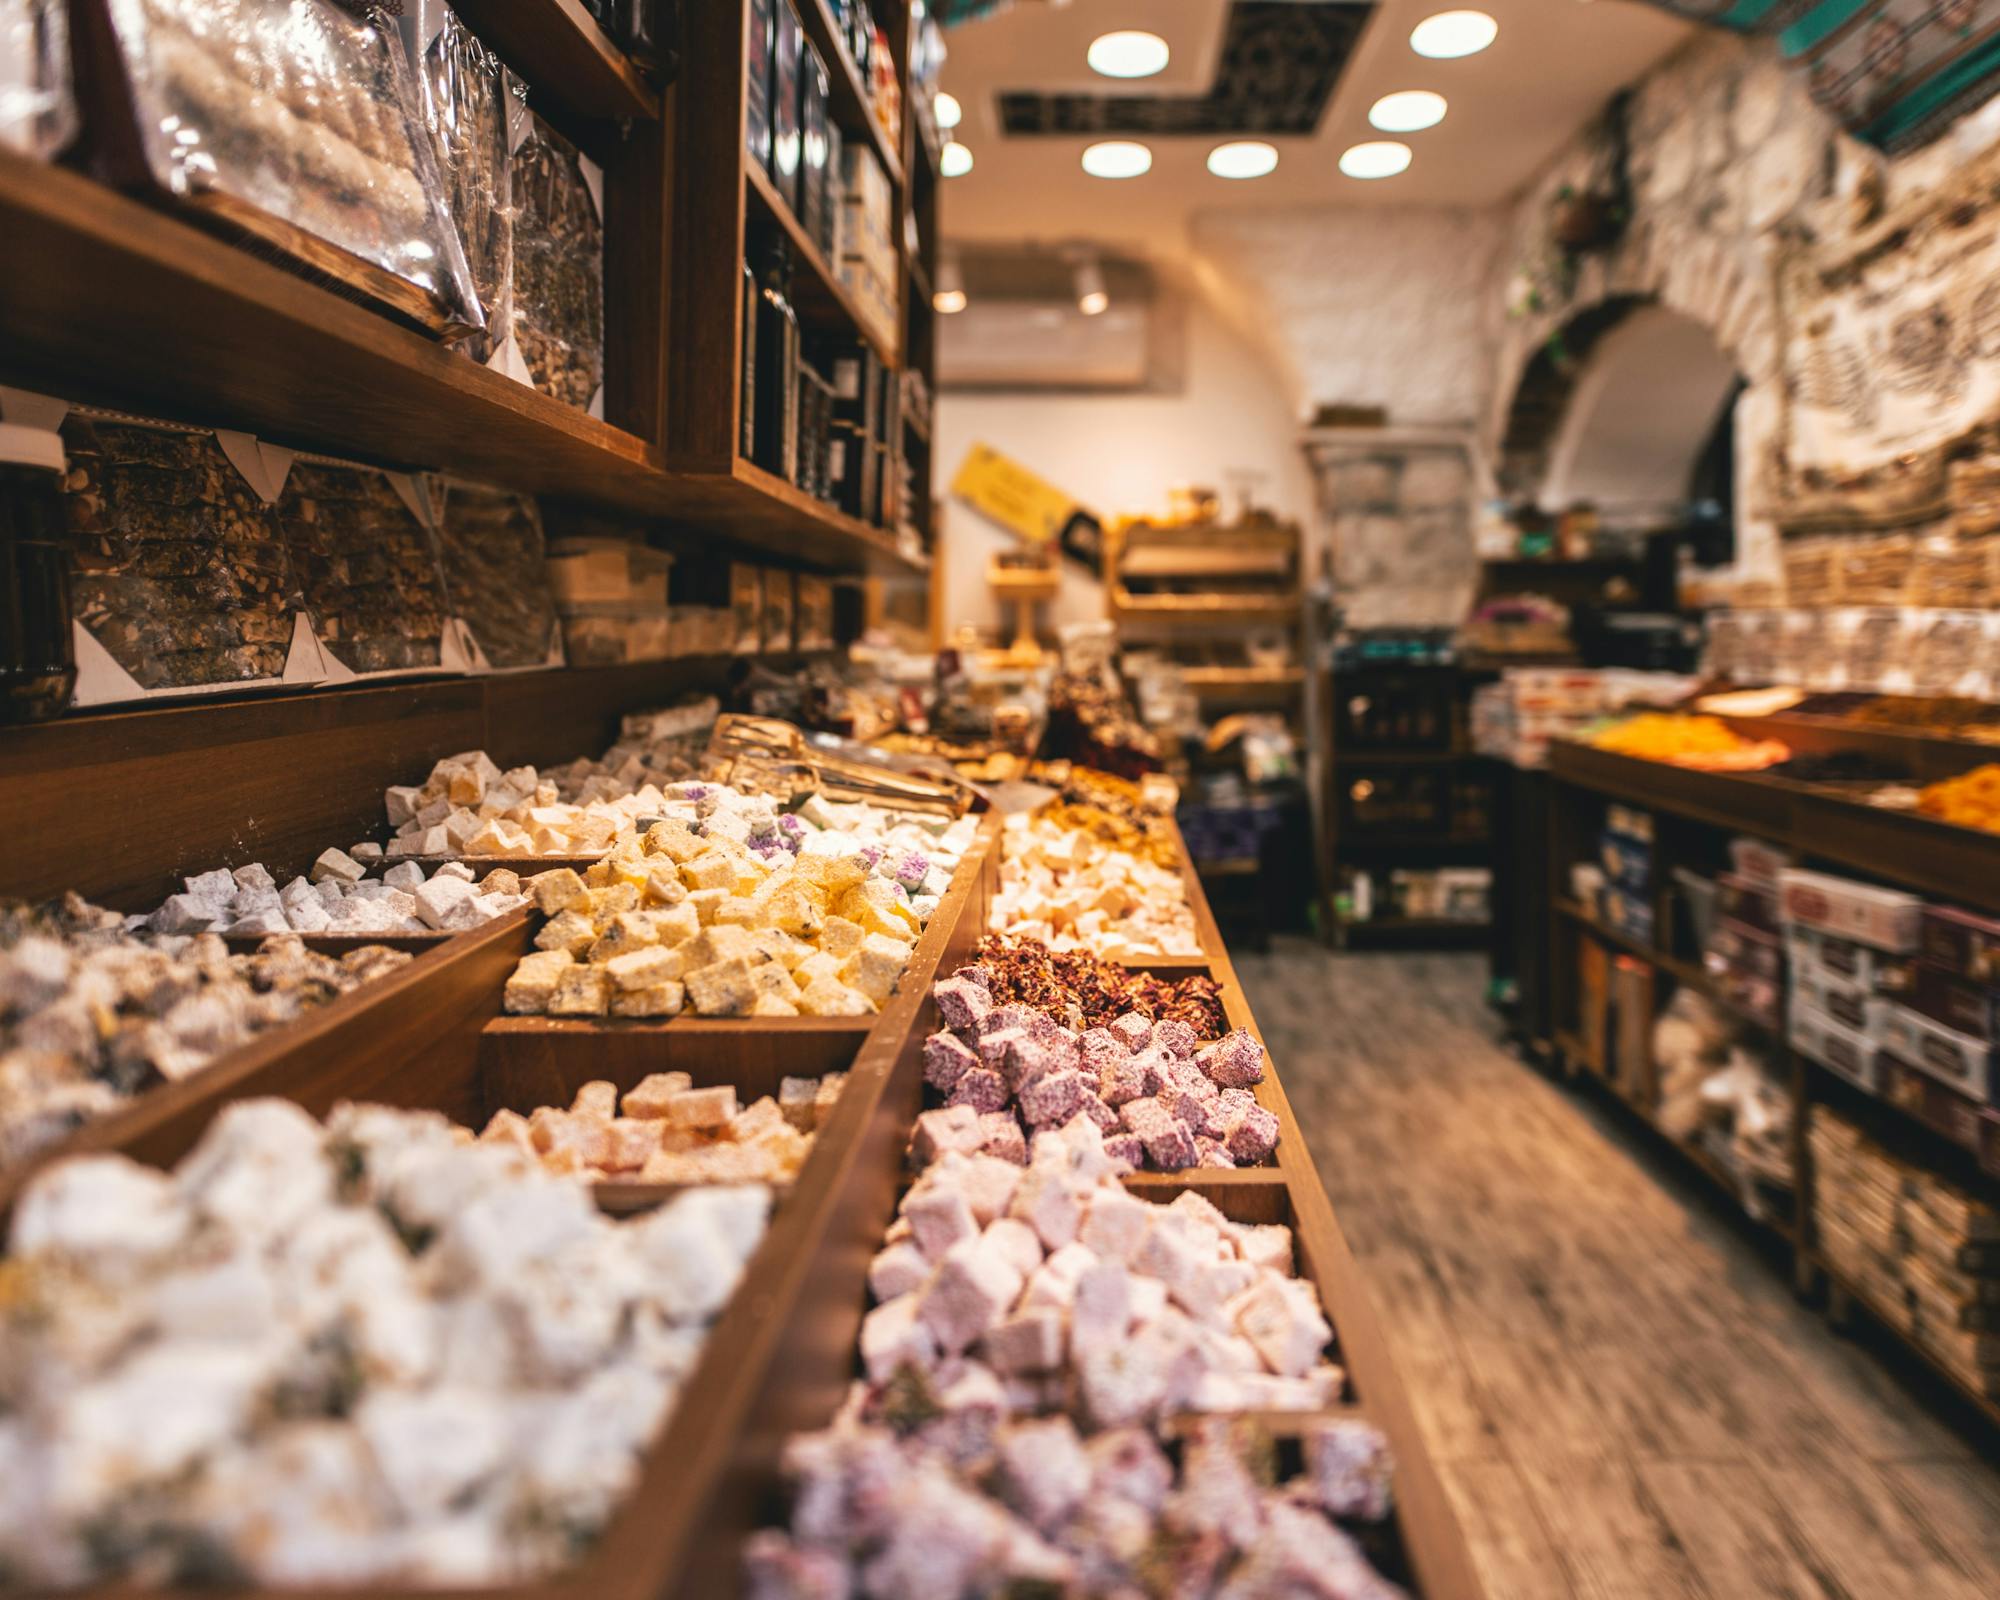 Izraelski sklep z delikatesami oferuje wiele słodkich przysmaków.